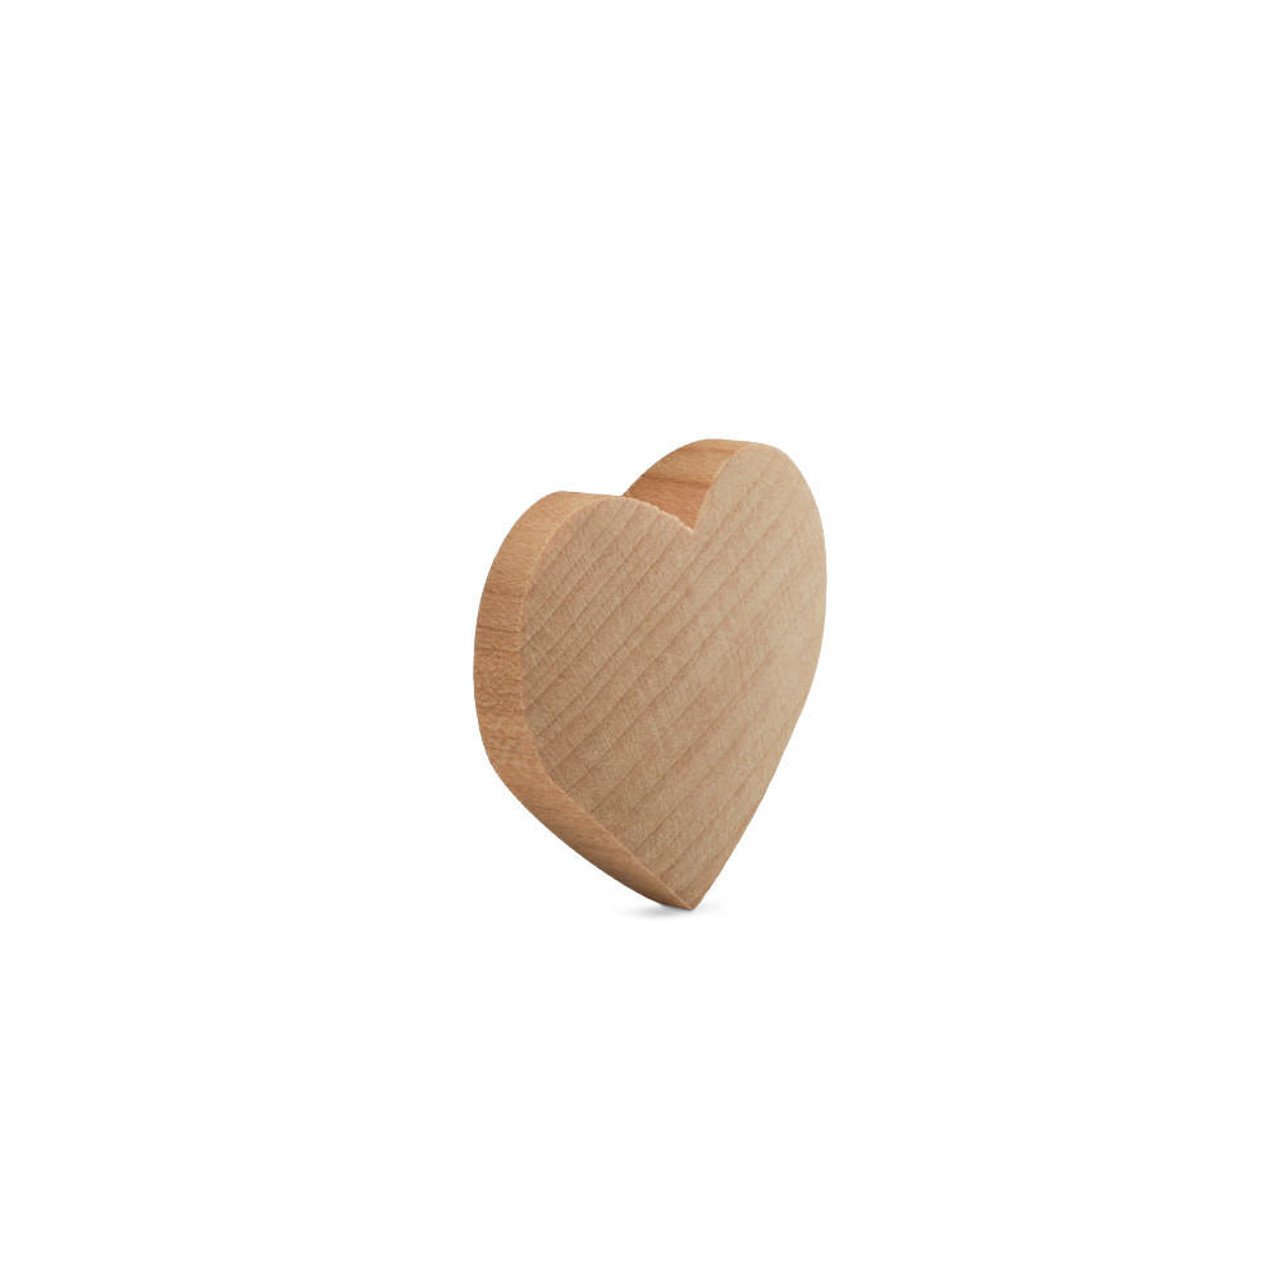 Tiny Wooden Heart 